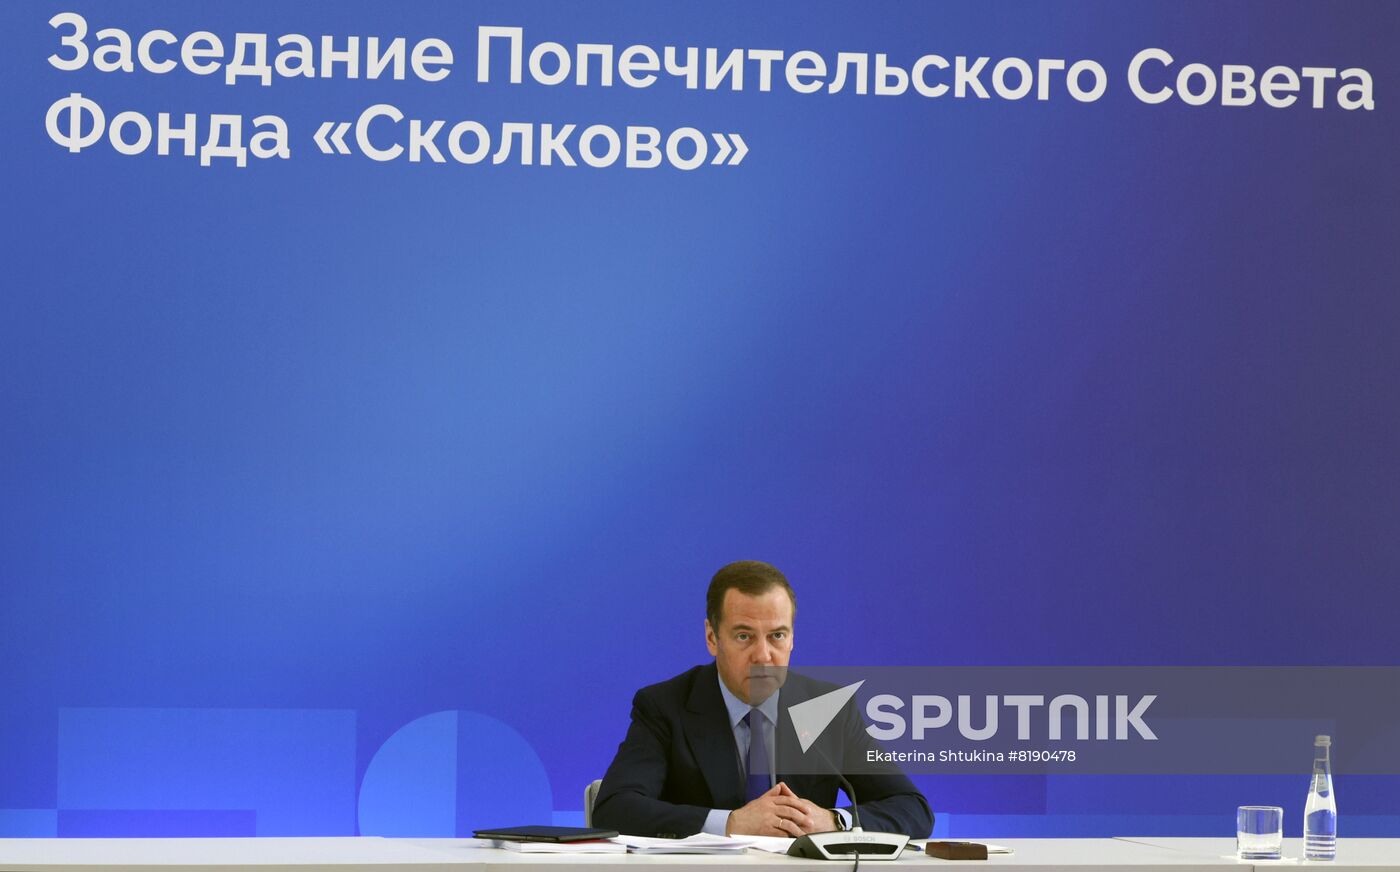 Russia Medvedev Skolkovo Foundation